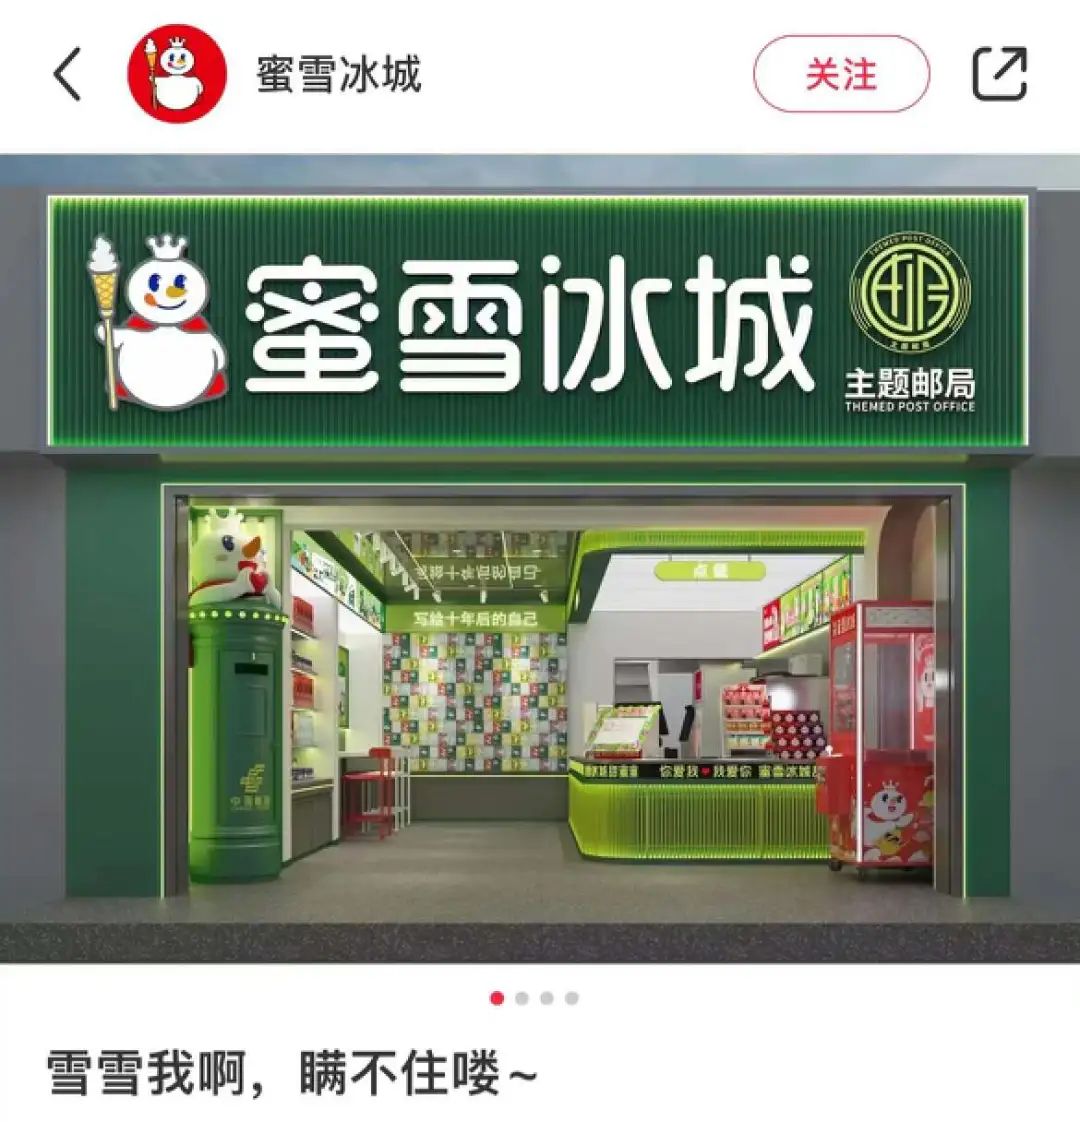 蜜雪冰城联名中国邮政的营销案例-传播蛙